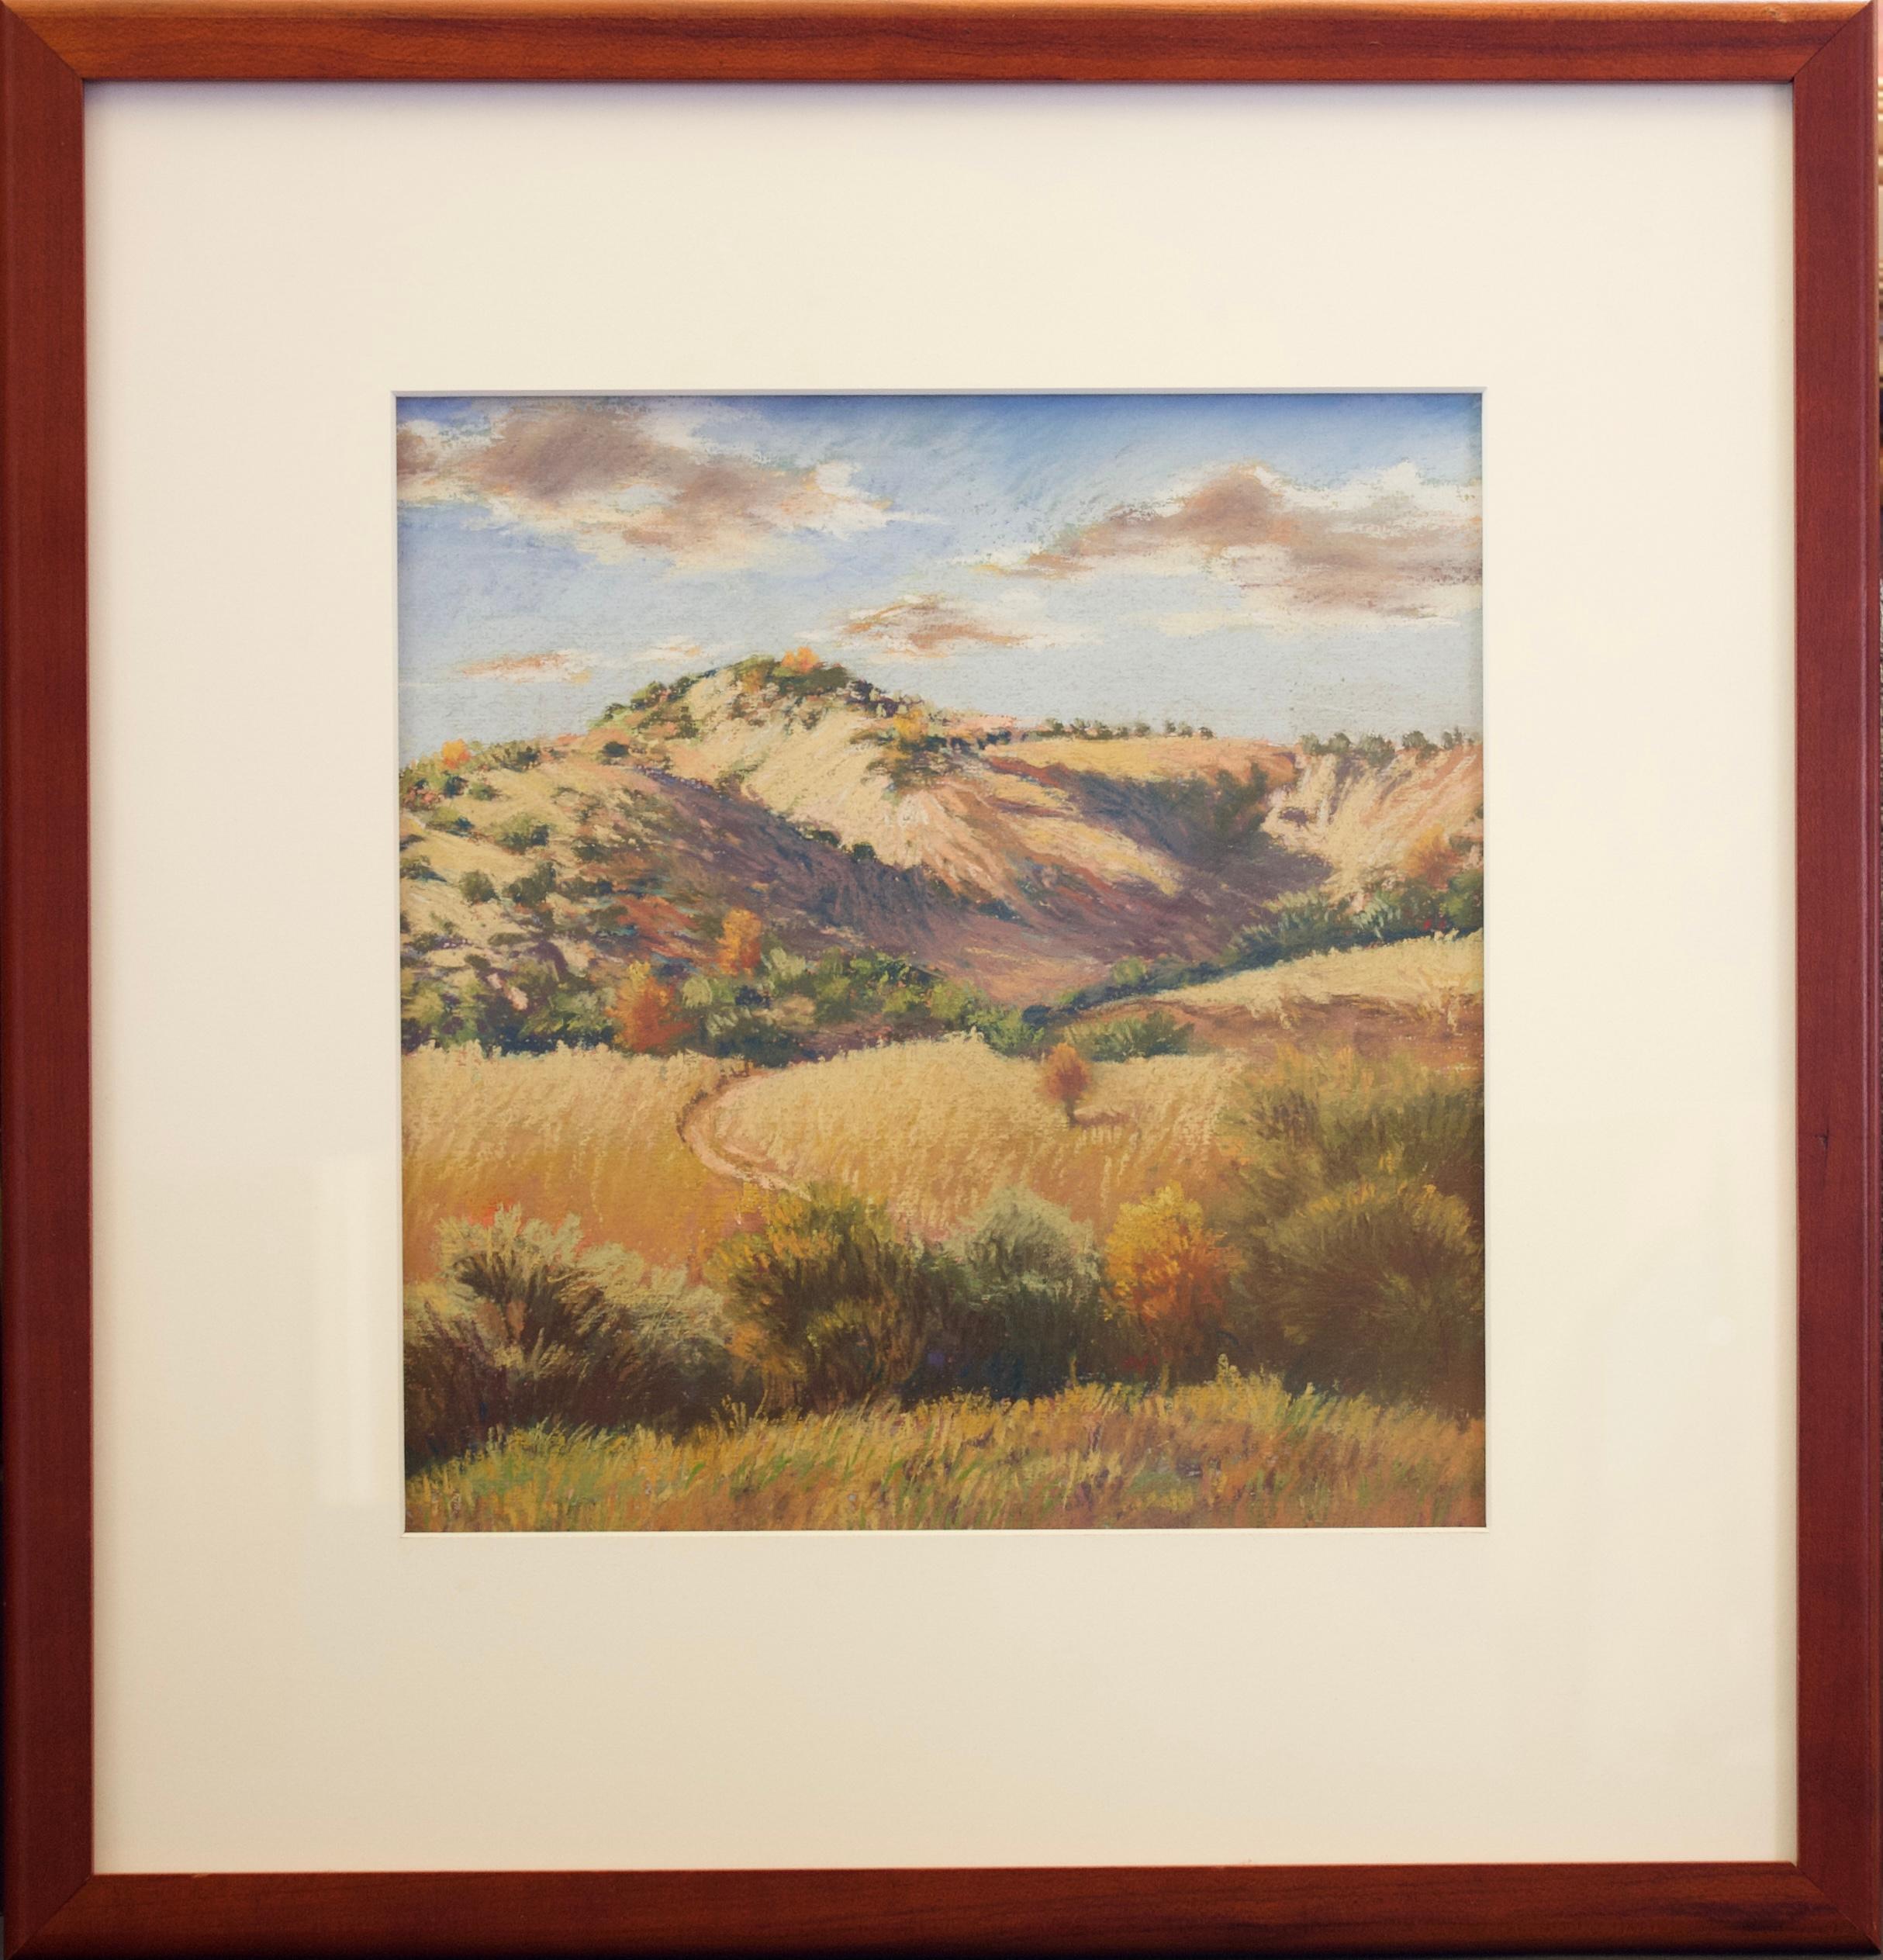 Paysage de colline sans titre
Artiste : Sandra Langston
Médium : Aquarelle et pastel sur papier
Taille : 9,5